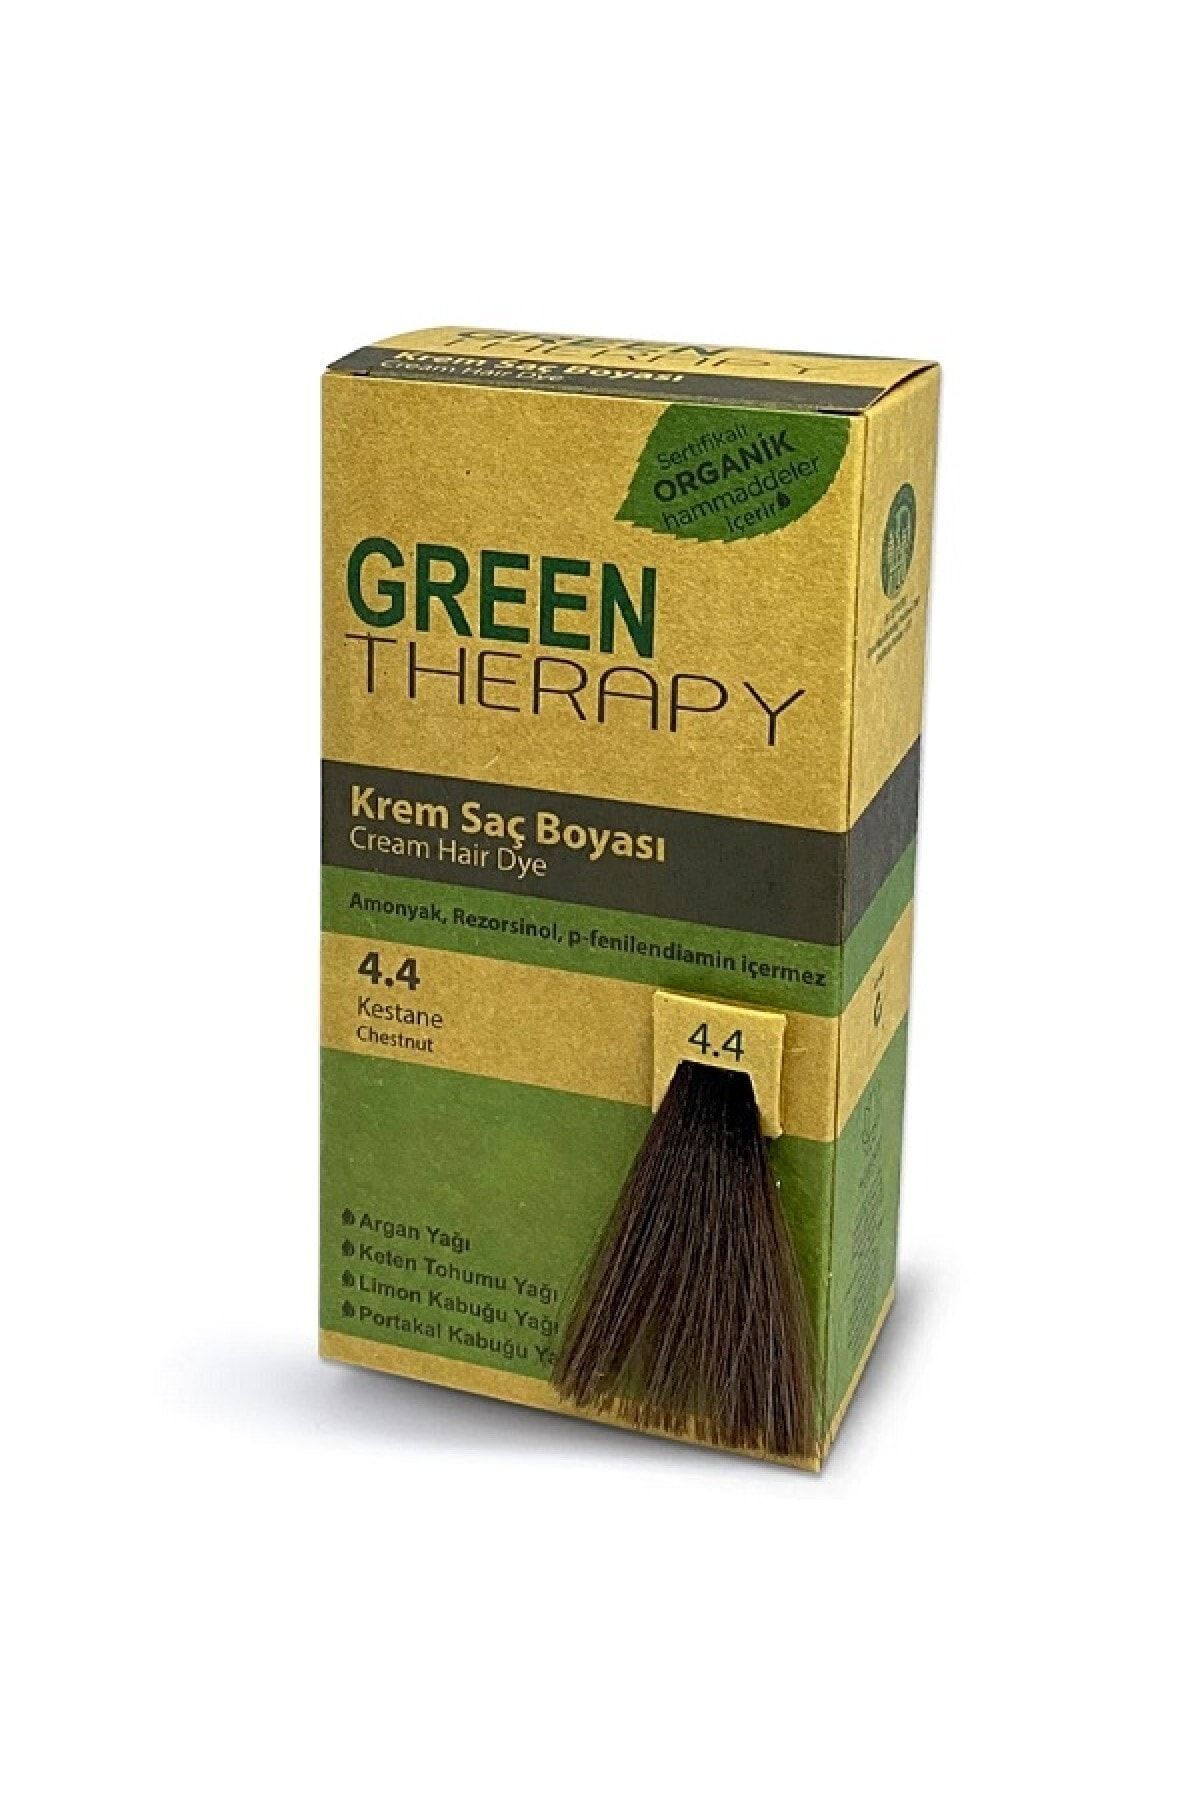 Green Therapy Krem Saç Boyası 4.4 Kestane